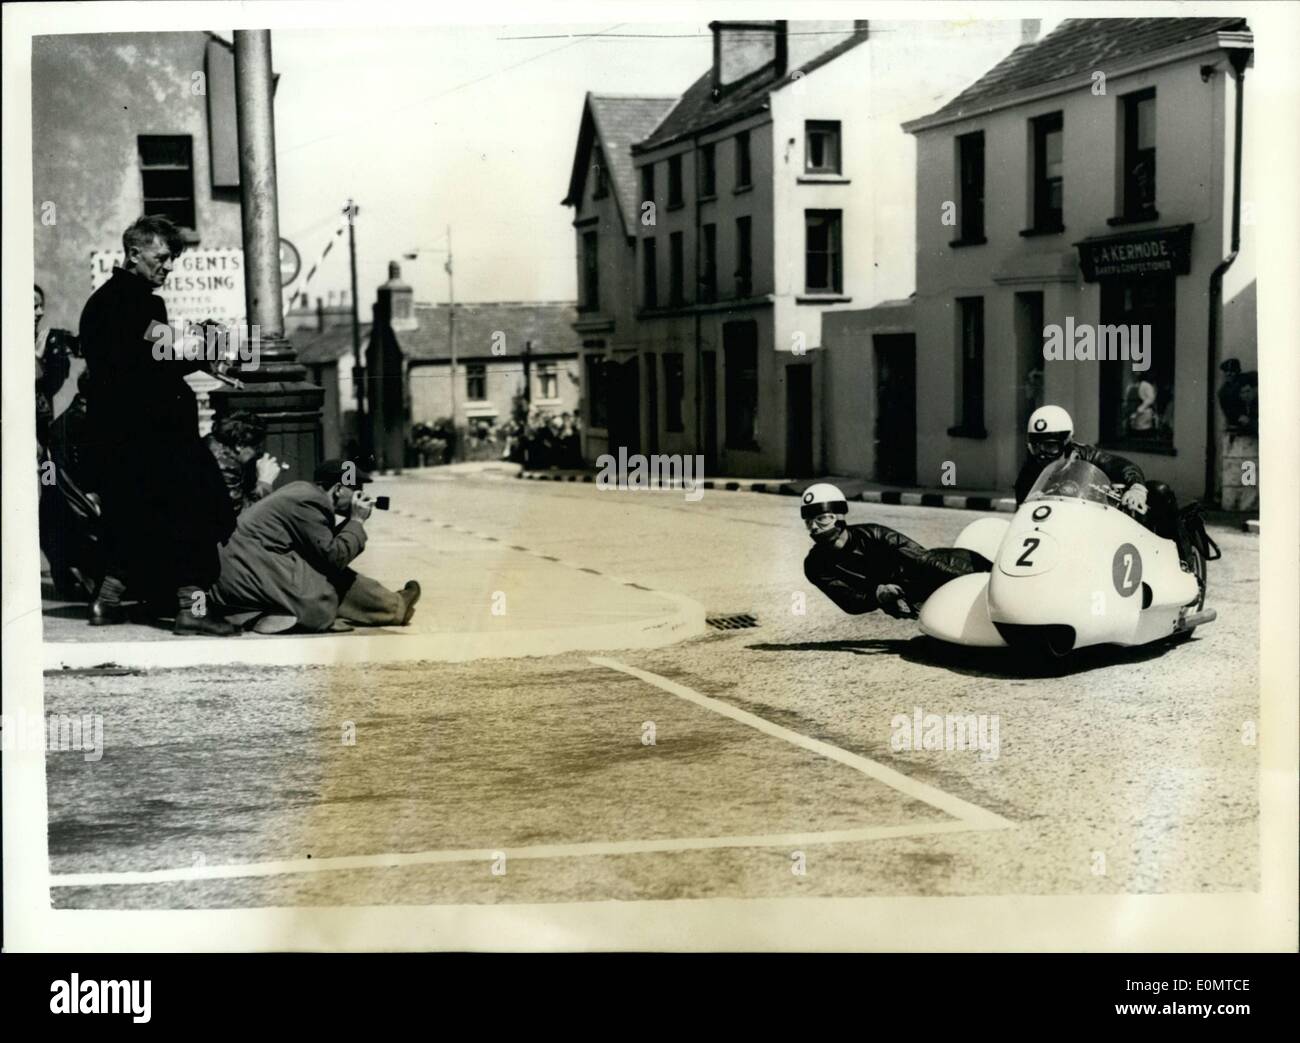 Juin 06, 1956 - Île de Man T.T. courses. Dans le side-car allemand gagner race : Photo montre F. Hillebrand (Allemagne), école un B.M.W., avec M. Ghunwald, en tant que passager vu à la vitesse pendant la course internationale au side-car, Douglas, île de Man, hier. Ils ont gagné la course. Banque D'Images